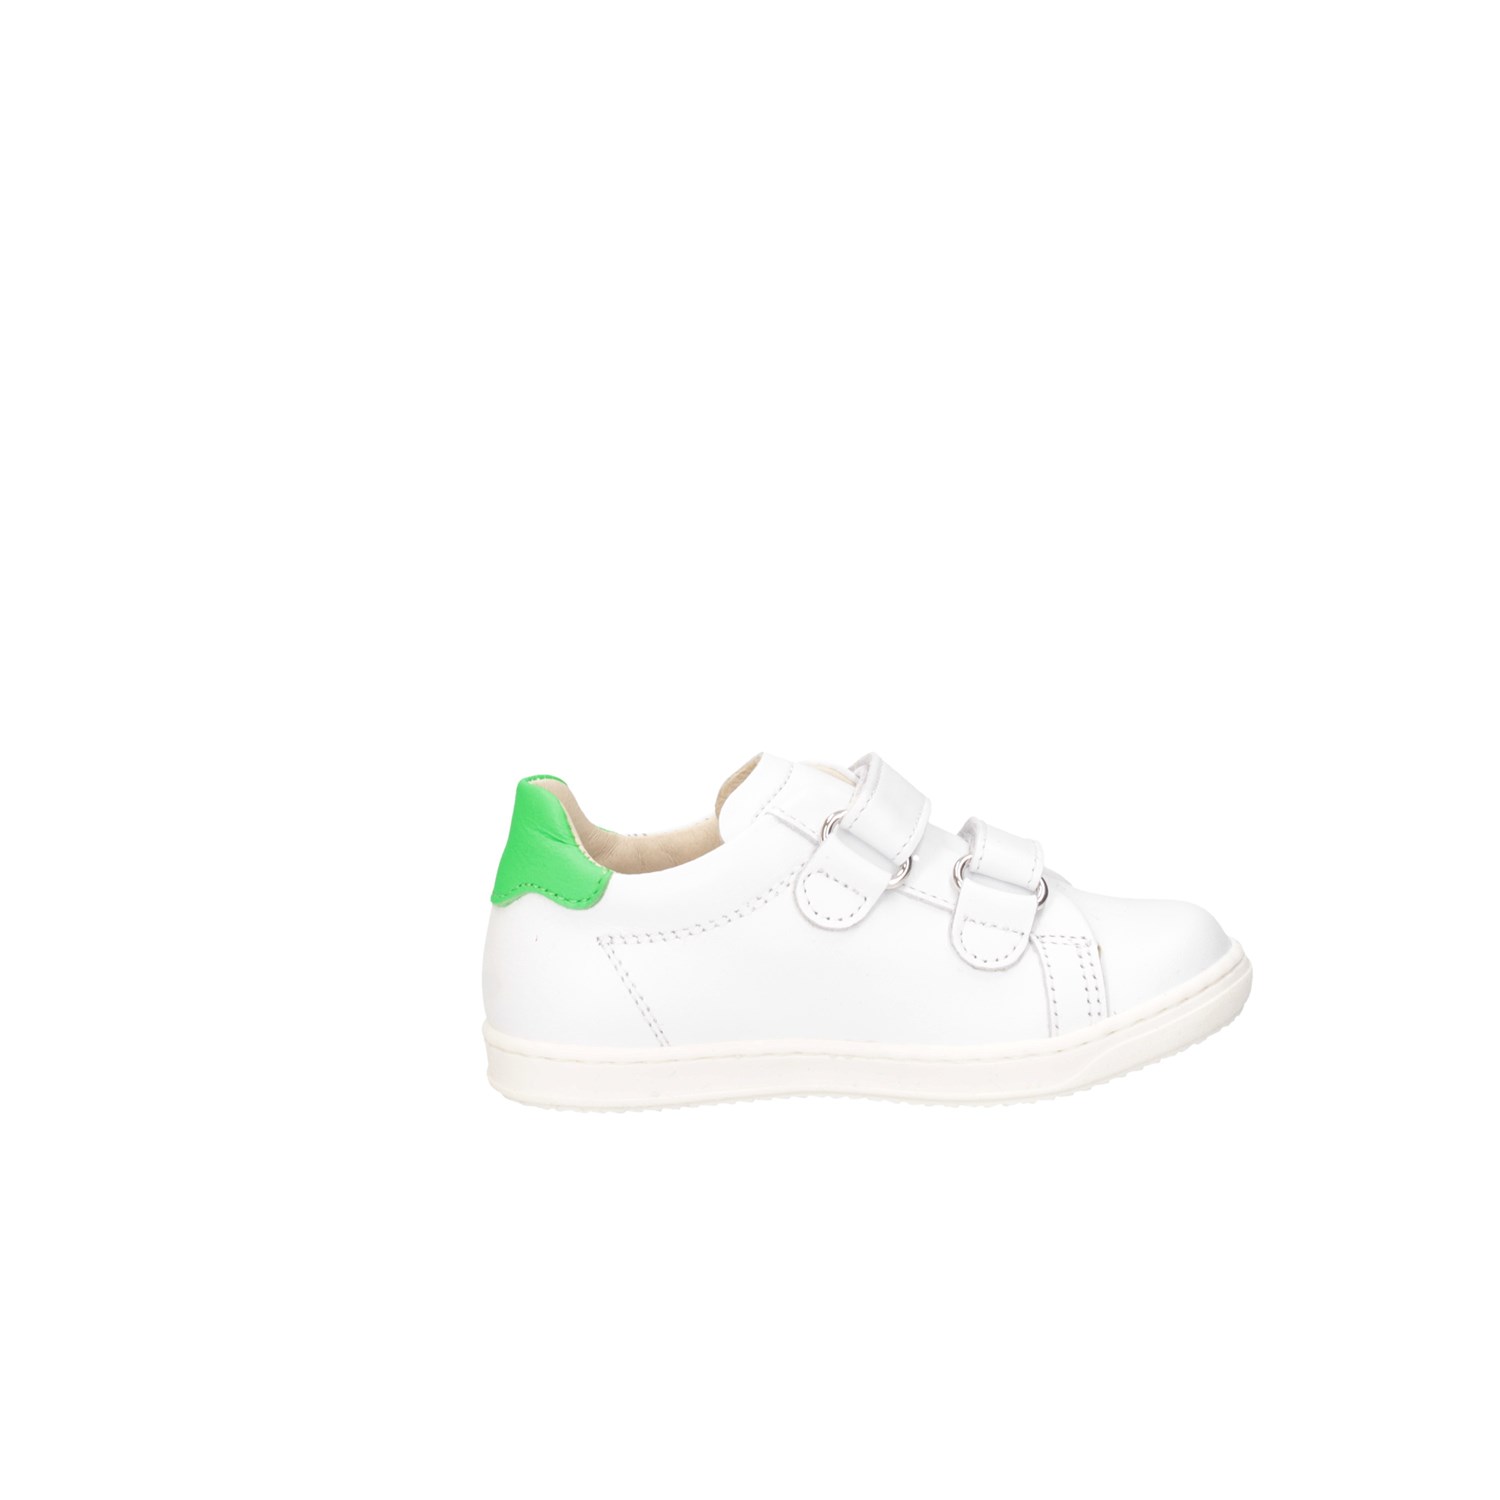 Gioiecologiche 5561 White green Shoes Child 